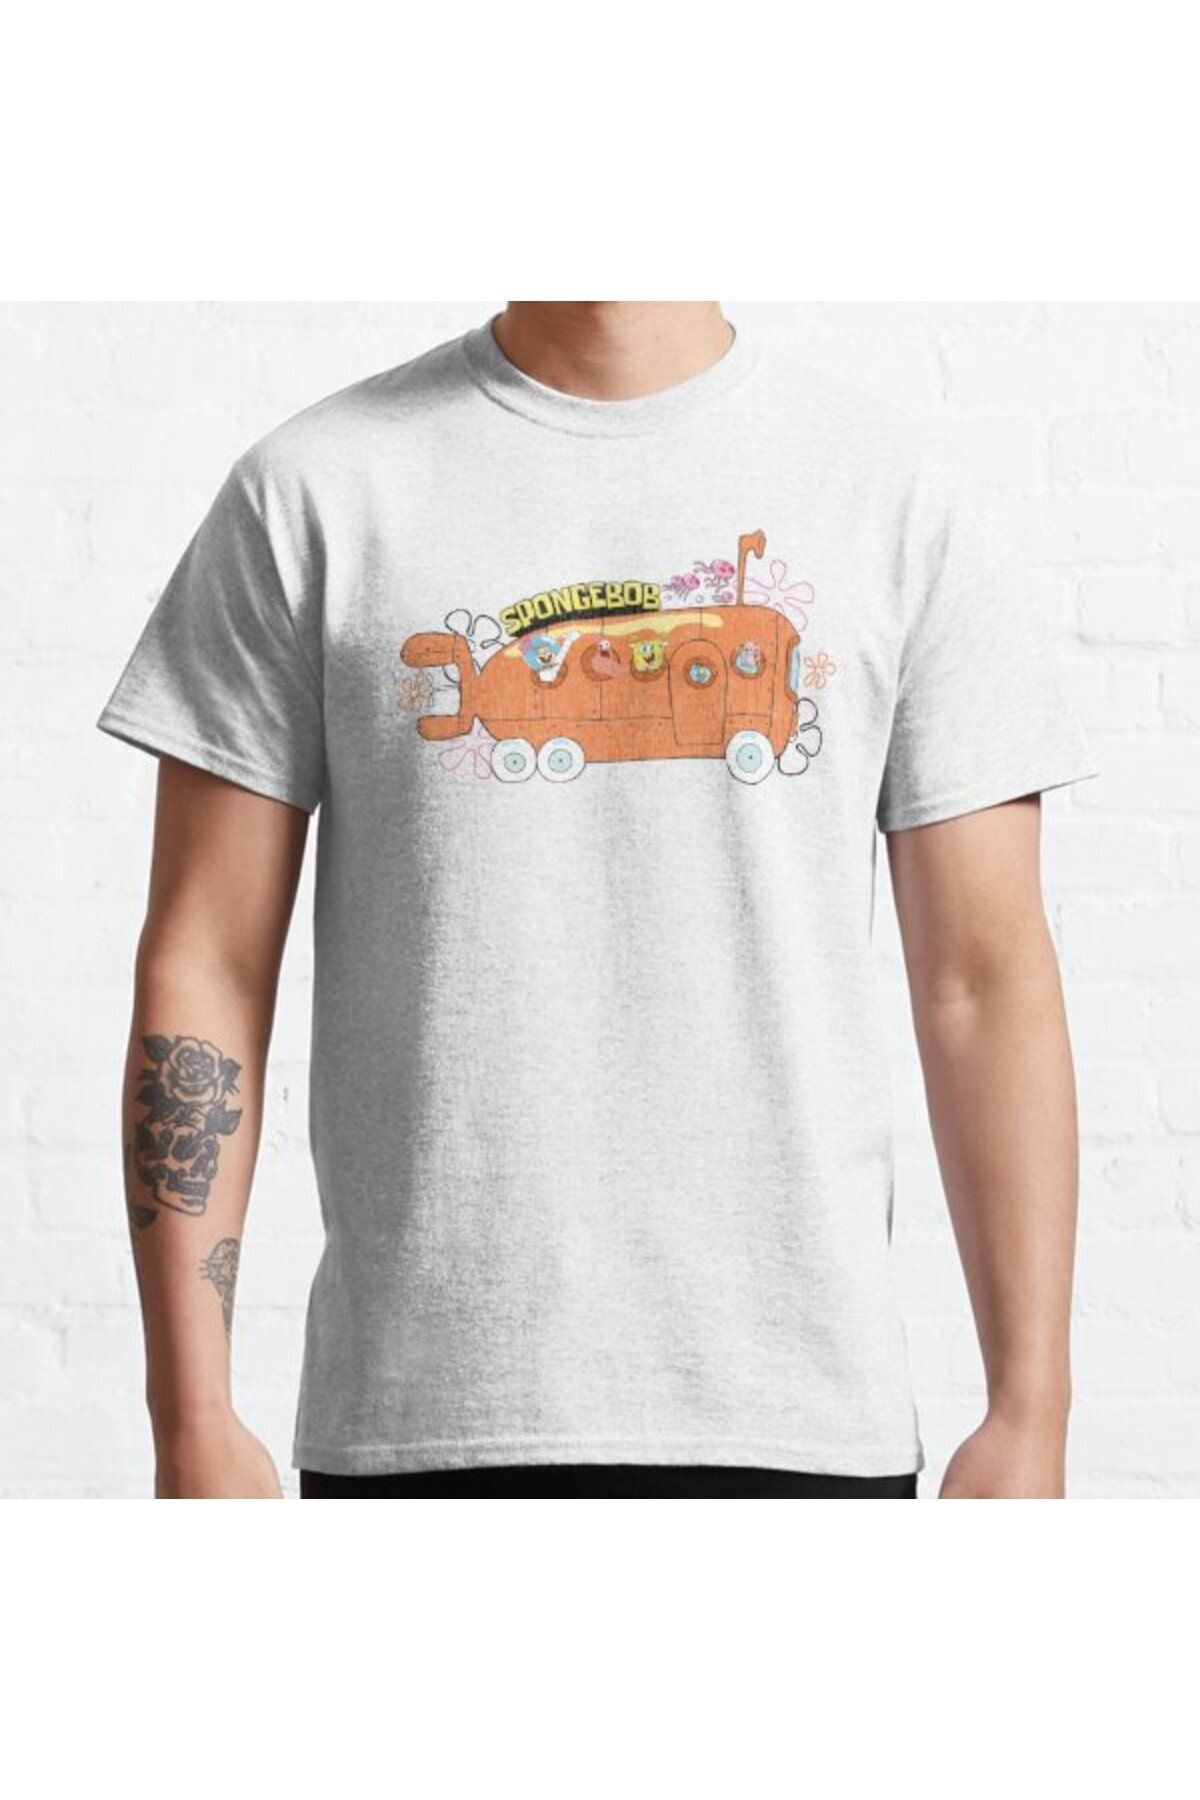 ZOKAWEAR Bol Kalıp Unisex Spongebob Squarepants Bikini Bottom Bus Group Tasarım Baskılı Tshirt